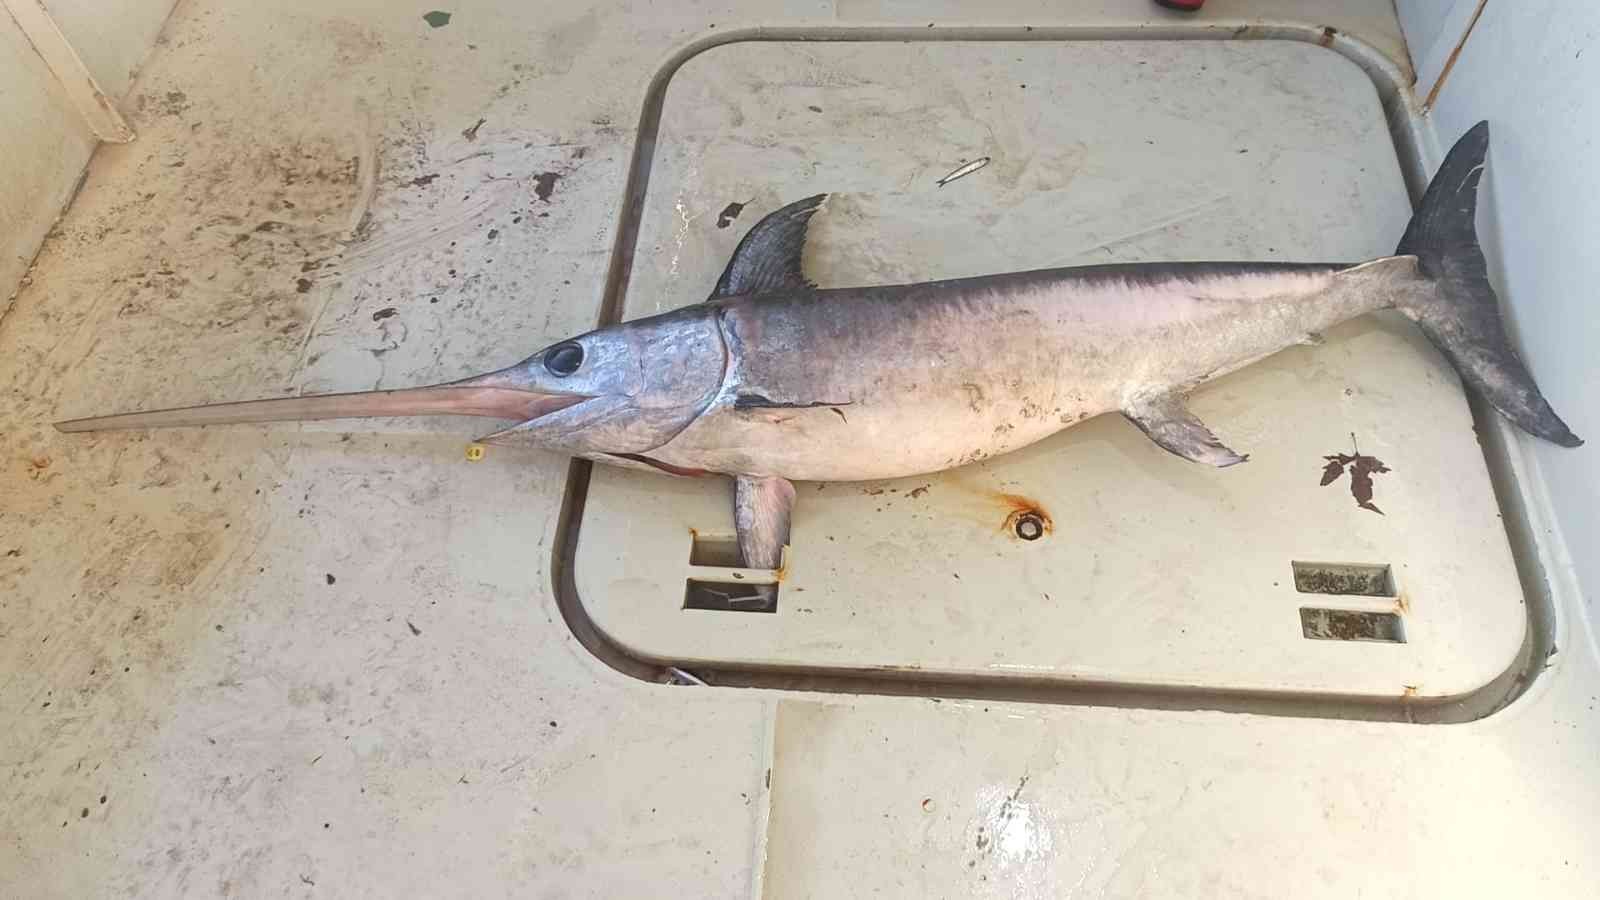 Hamsi ağına bir buçuk metrelik kılıç balığı takıldı #balikesir